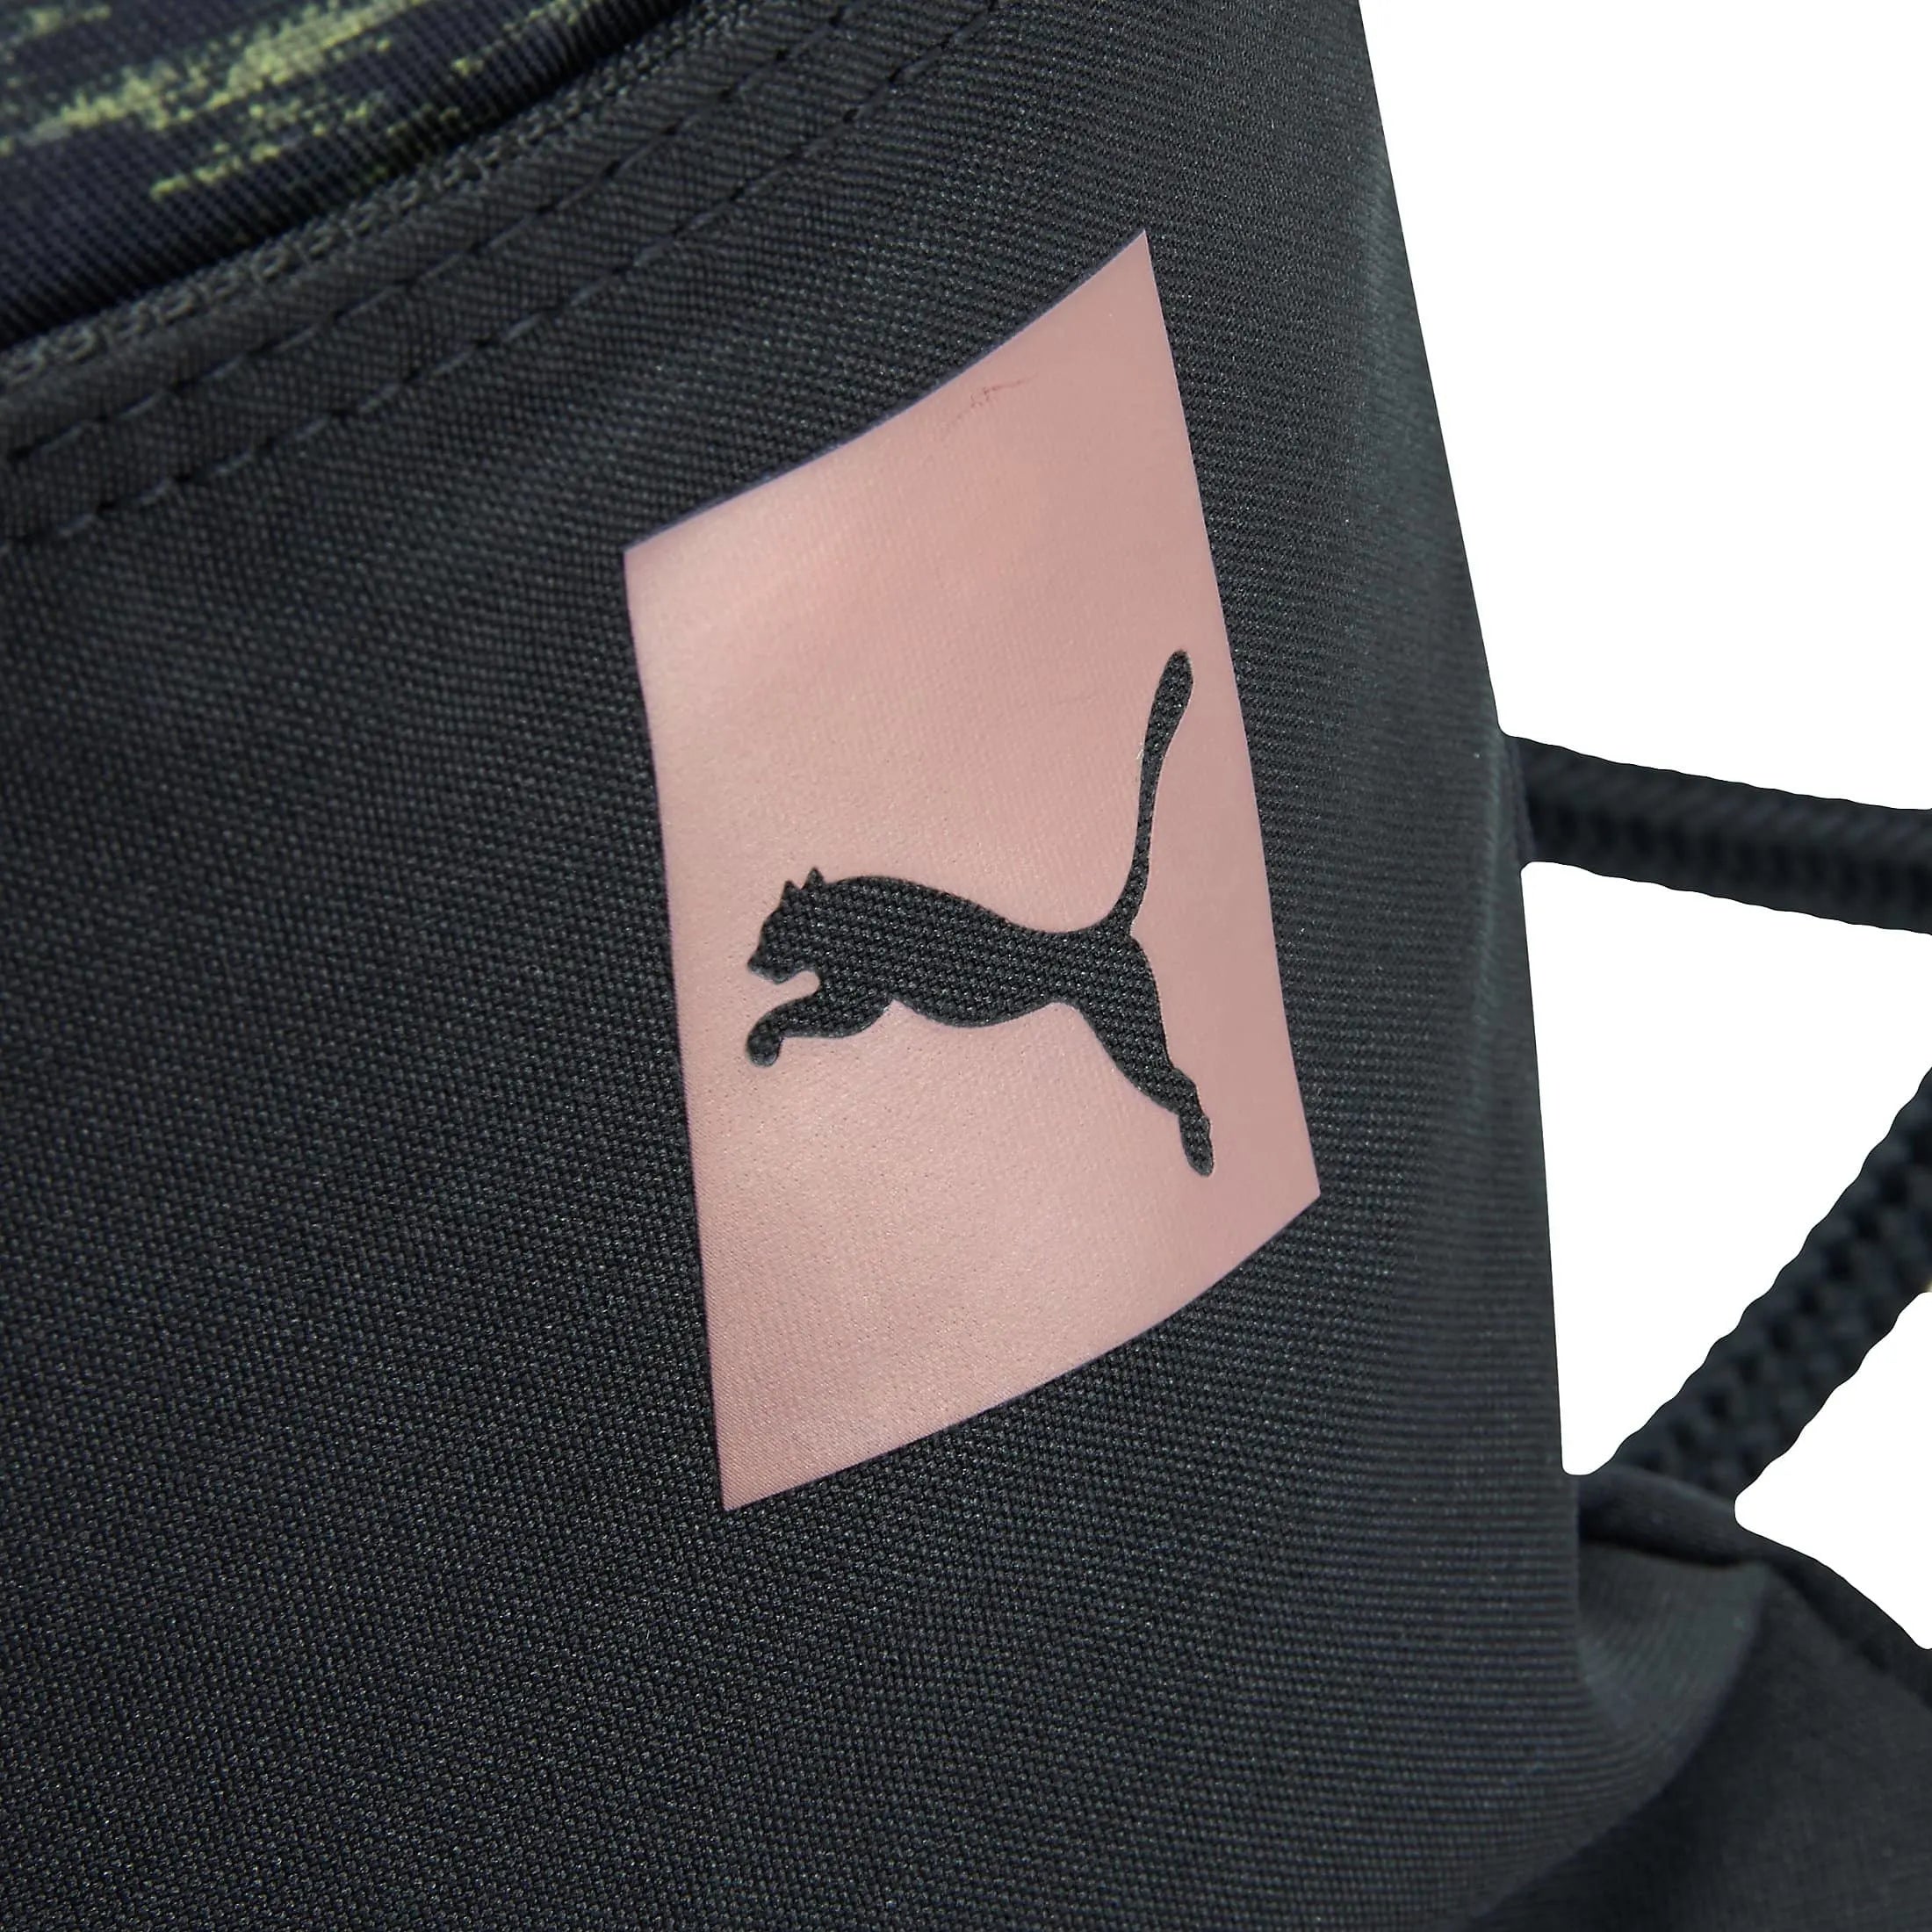 Puma Prime Gym Sack sac de sport 44 cm - corde noir avocat-velours